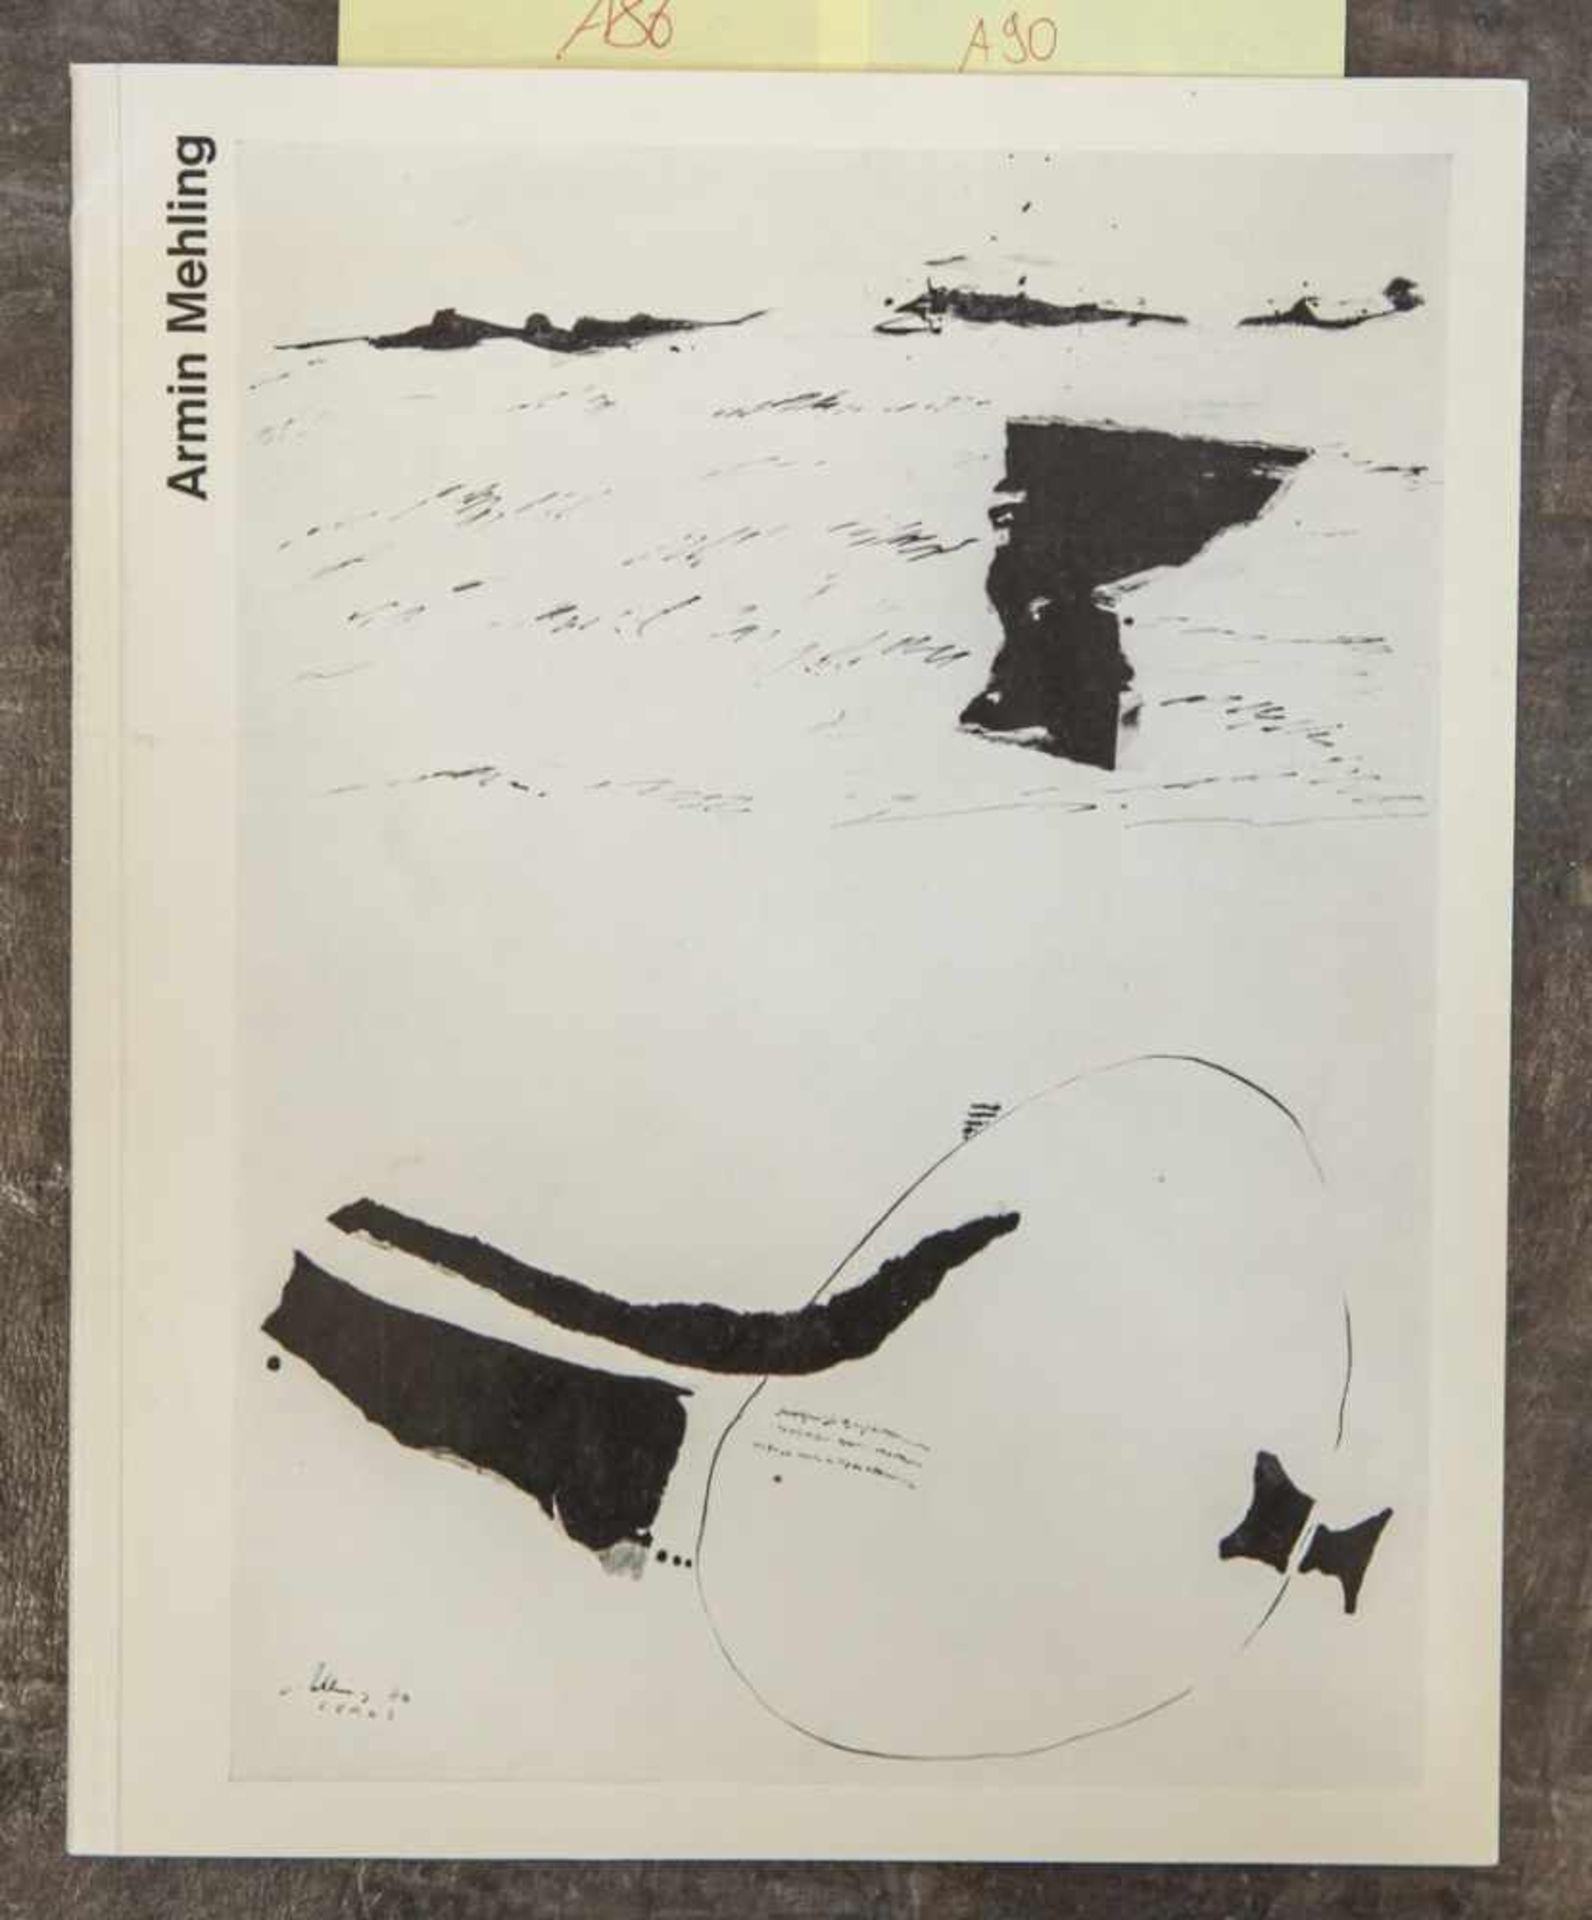 Mehling, Armin, Werkverzeichnis, Bochum 1971, mit persönlicher Widmung des Künstlers, Herstellung